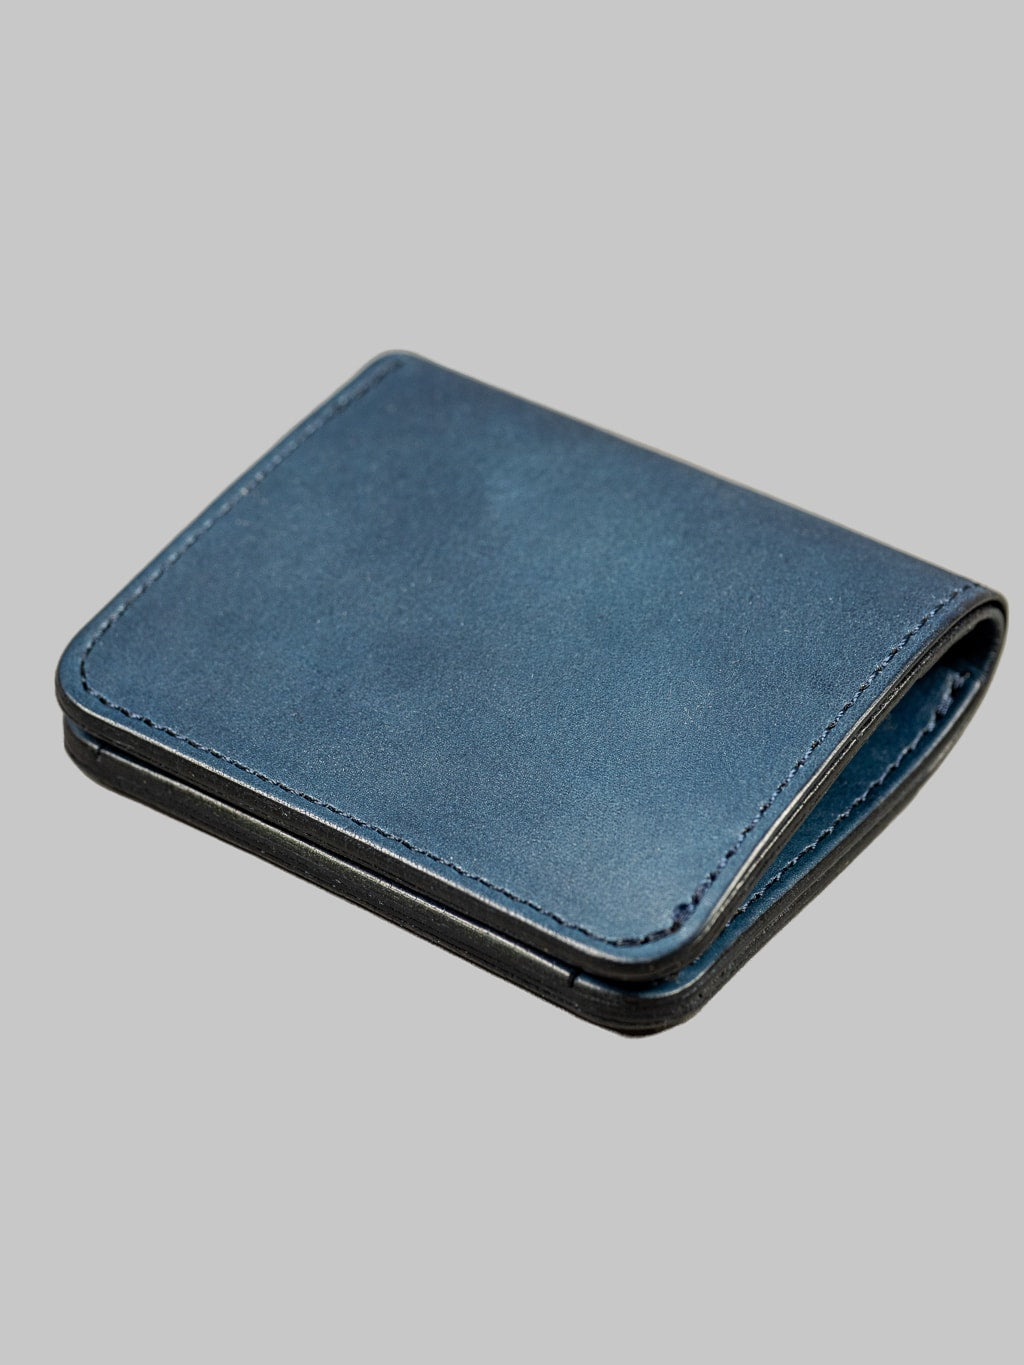 Studio Dartisan indigo leather mini wallet cowhide